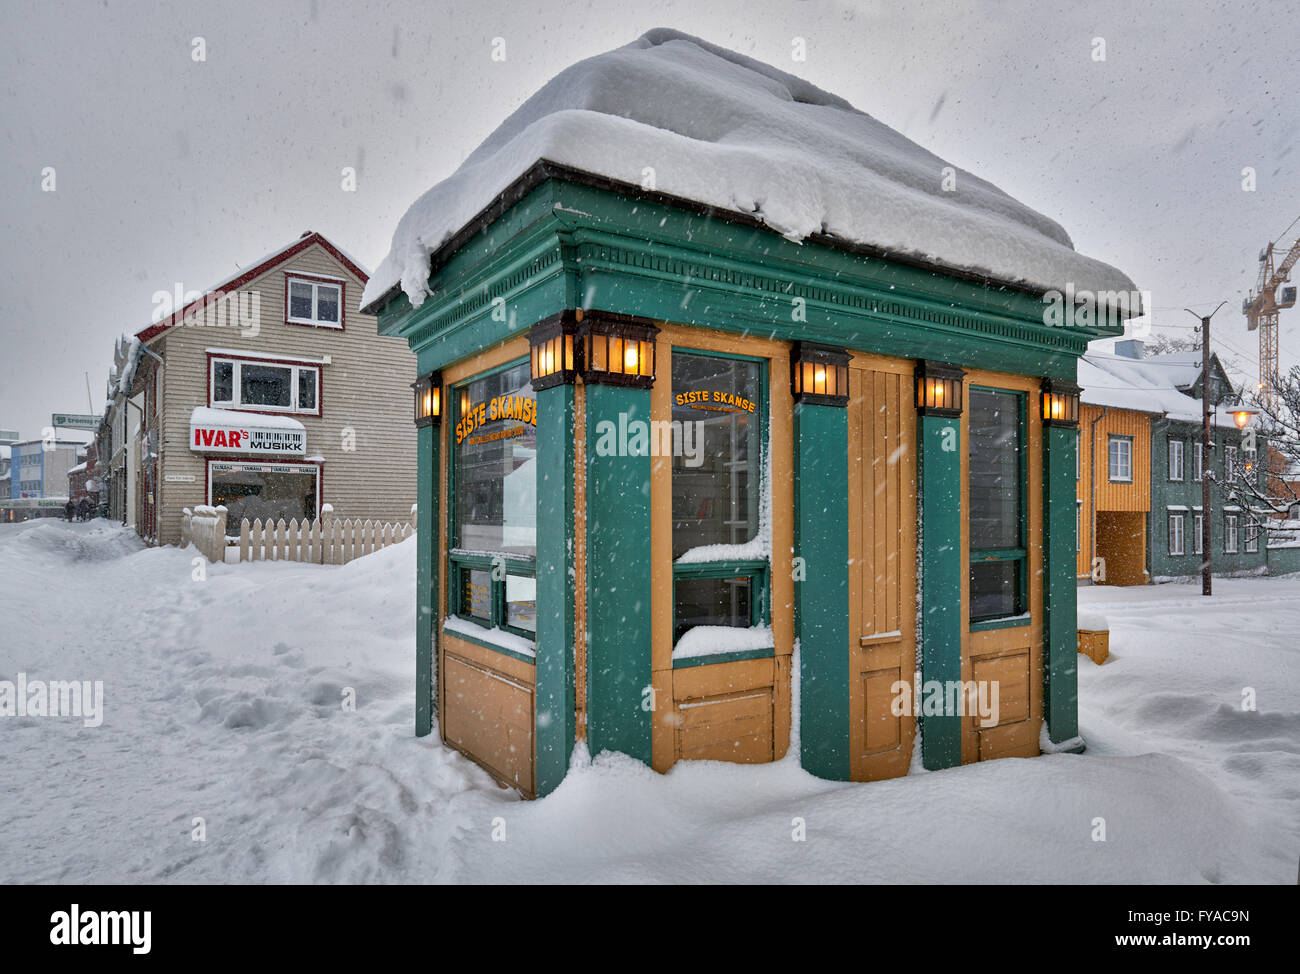 Monde plus petit instant portrait studio, bâtiments en bois typique de Tromsø, l'hiver avec beaucoup de neige, Troms, Norvège, Europe Banque D'Images